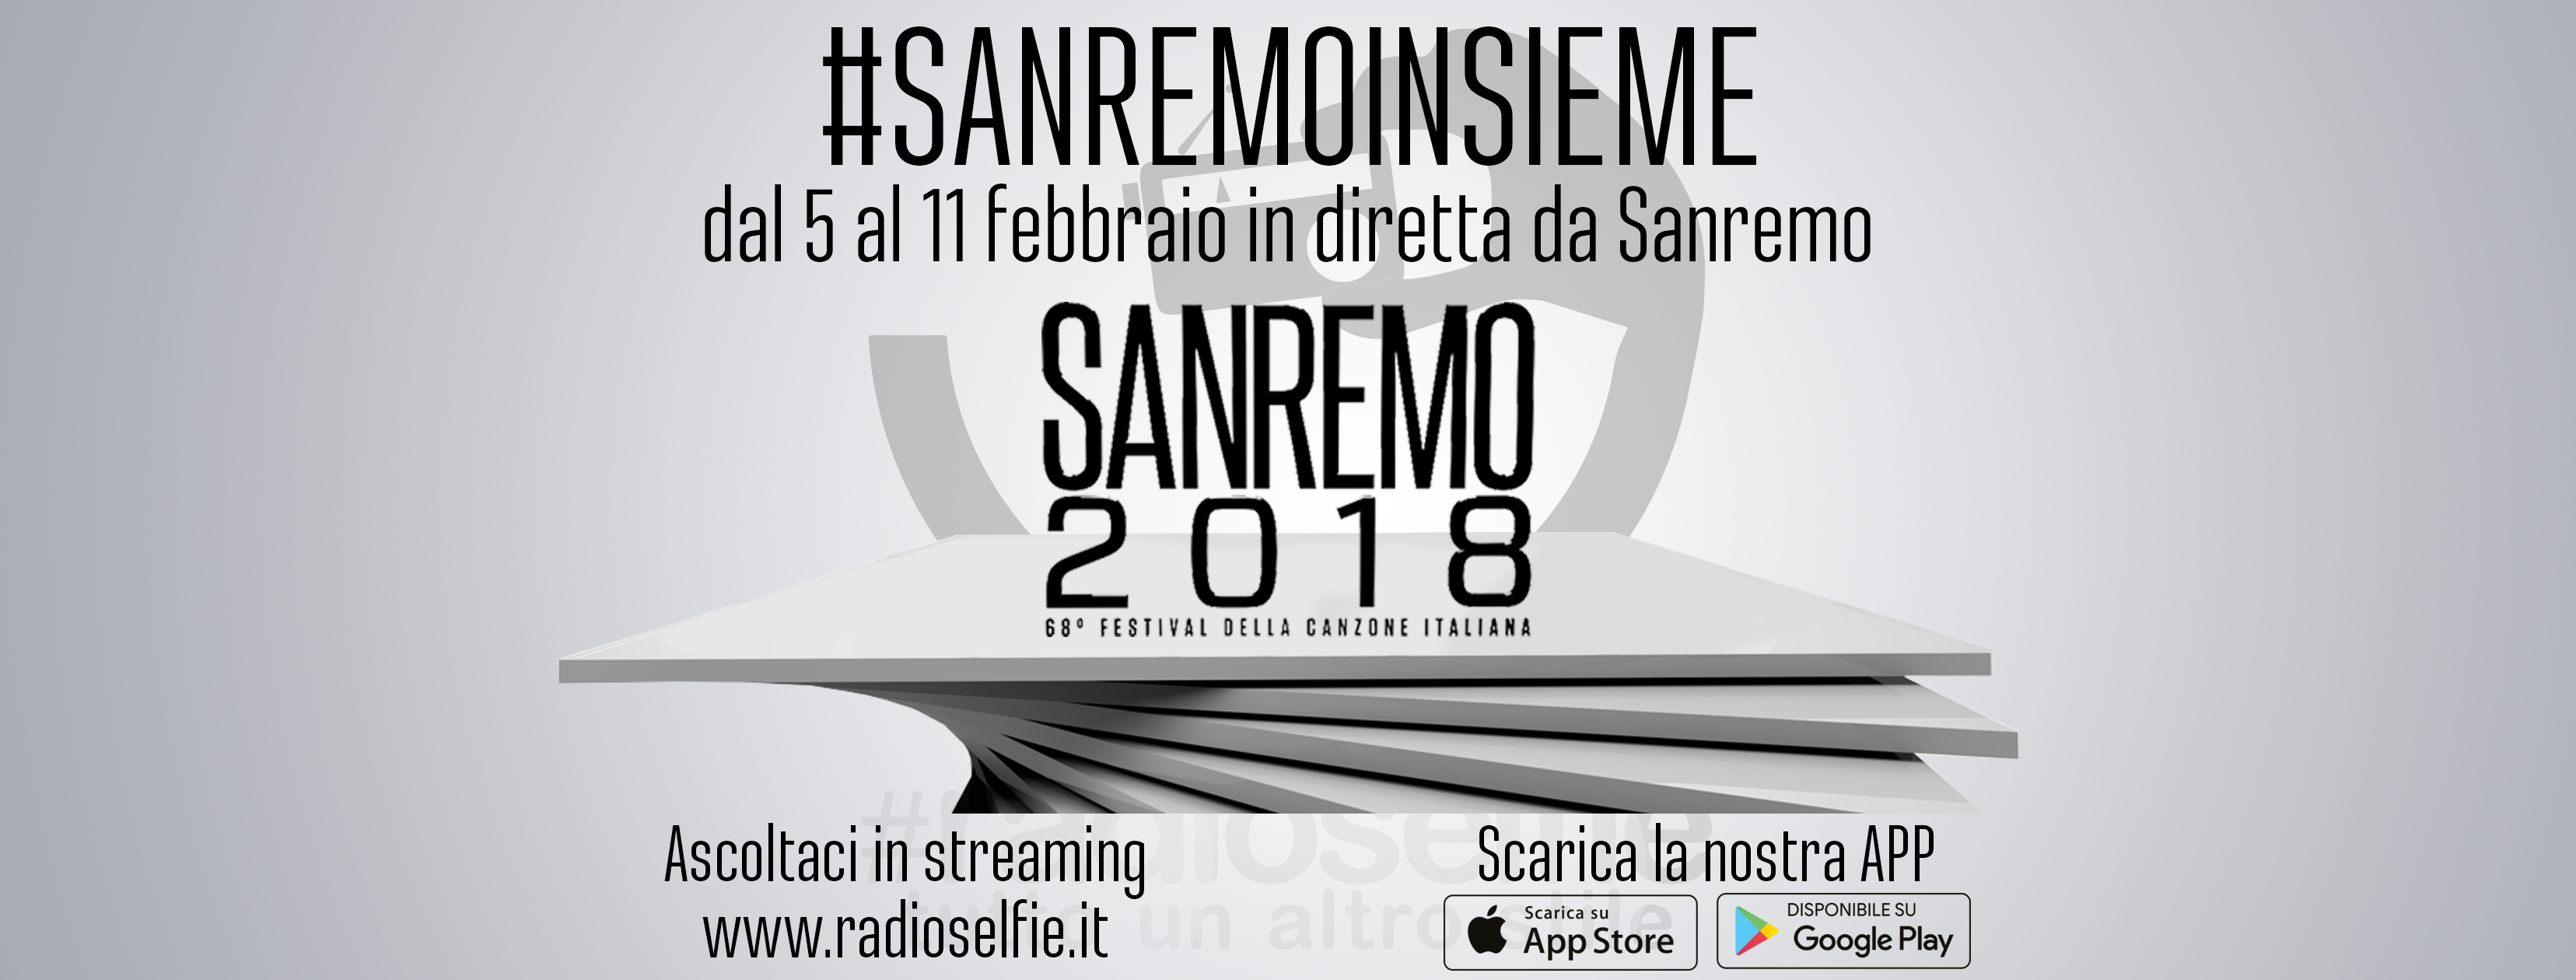 Sanremo 2019, i 24 artisti in gara